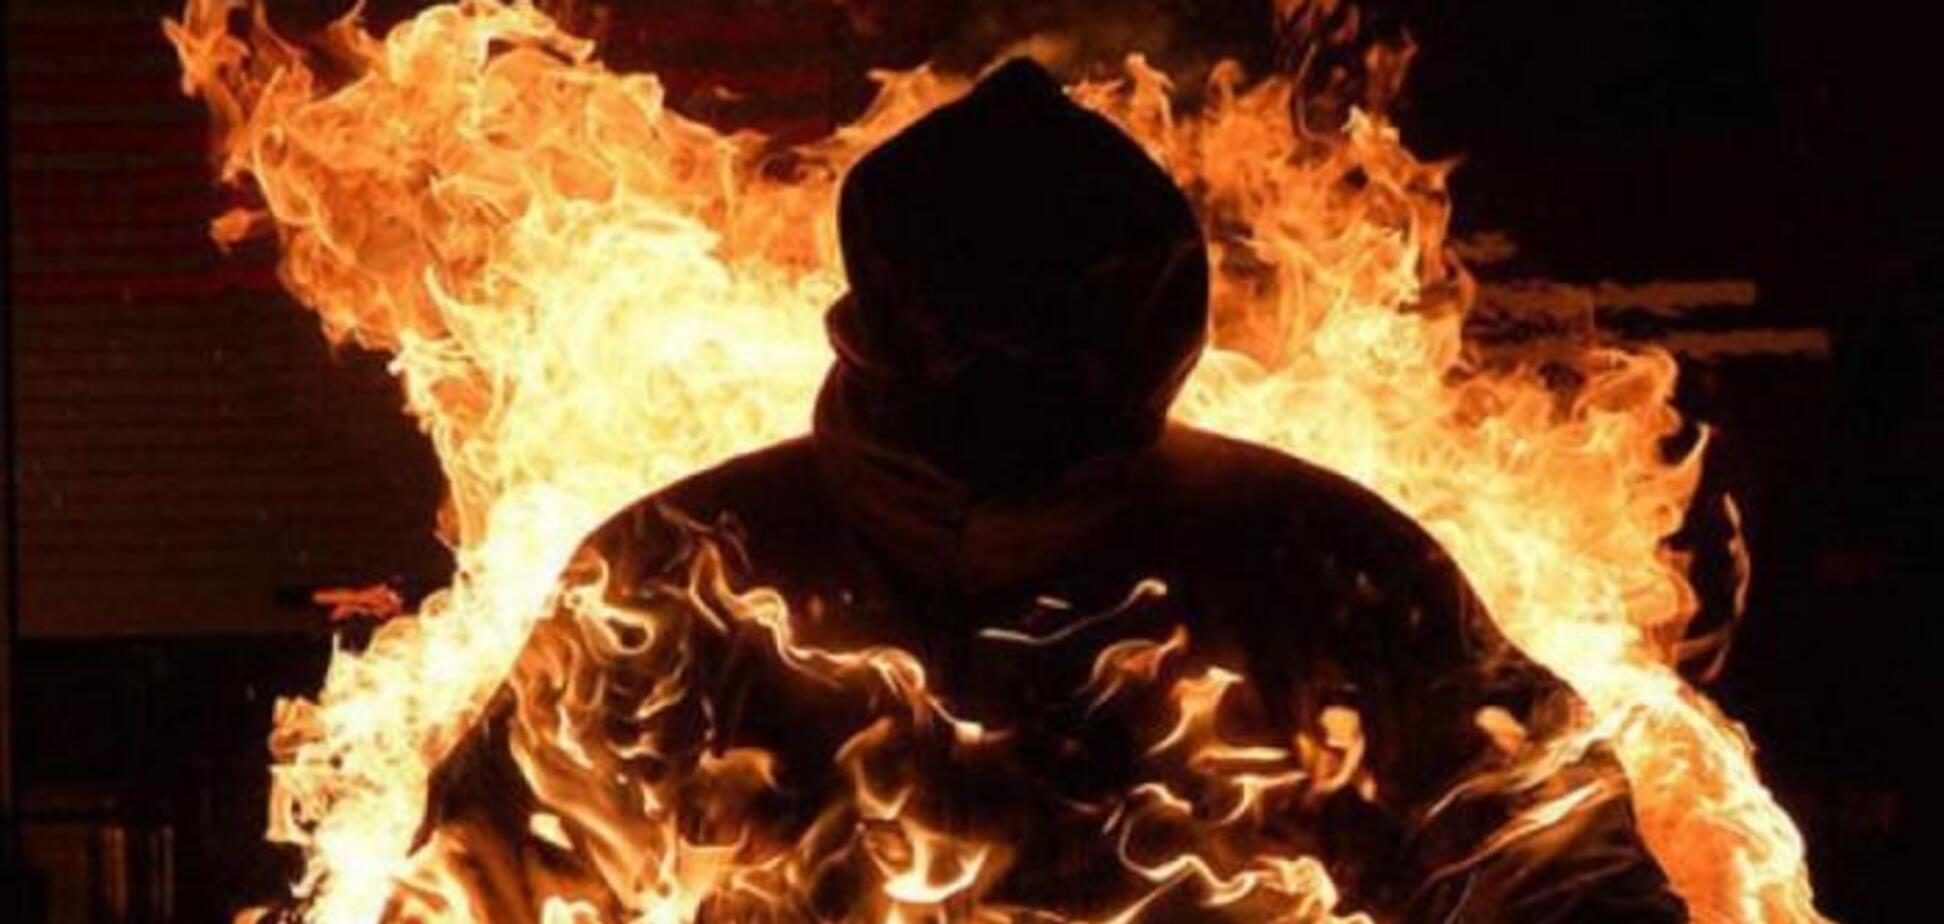 Екс-військовий підпалив себе в Києві: з'явилася інформація про його 'подвиги'